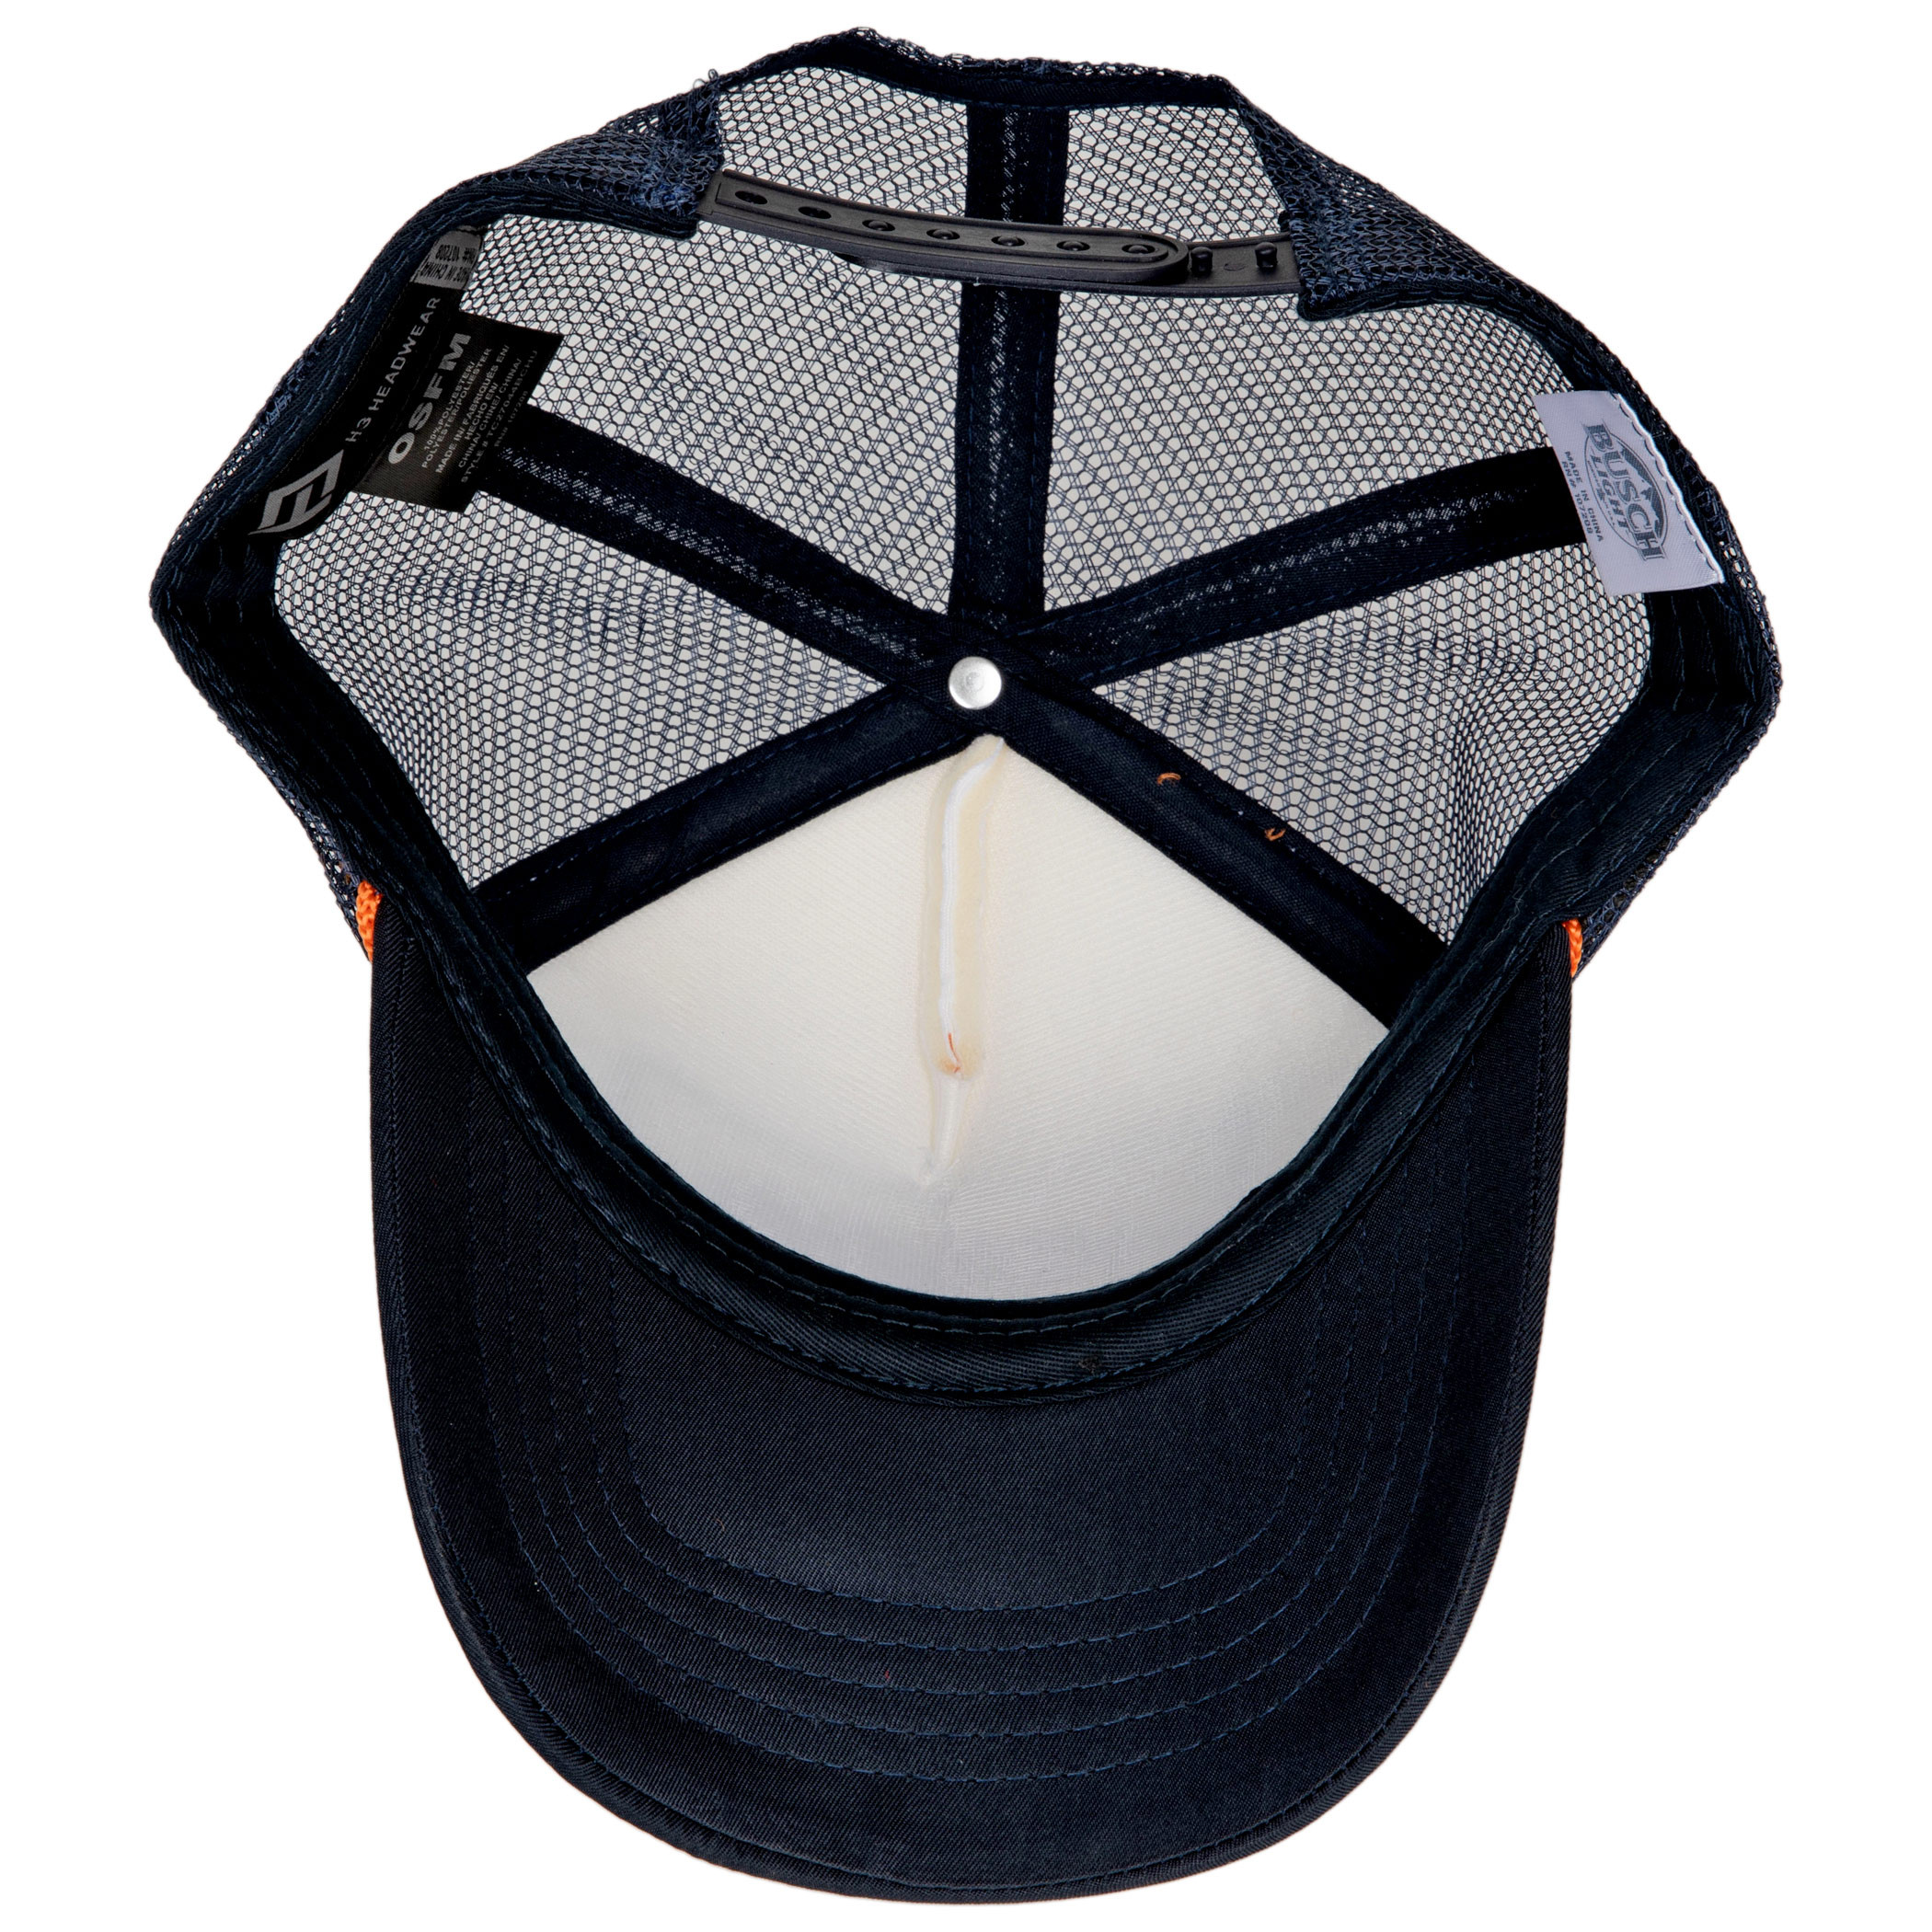 Buckle H3 Headwear Busch Light Fishing Hat